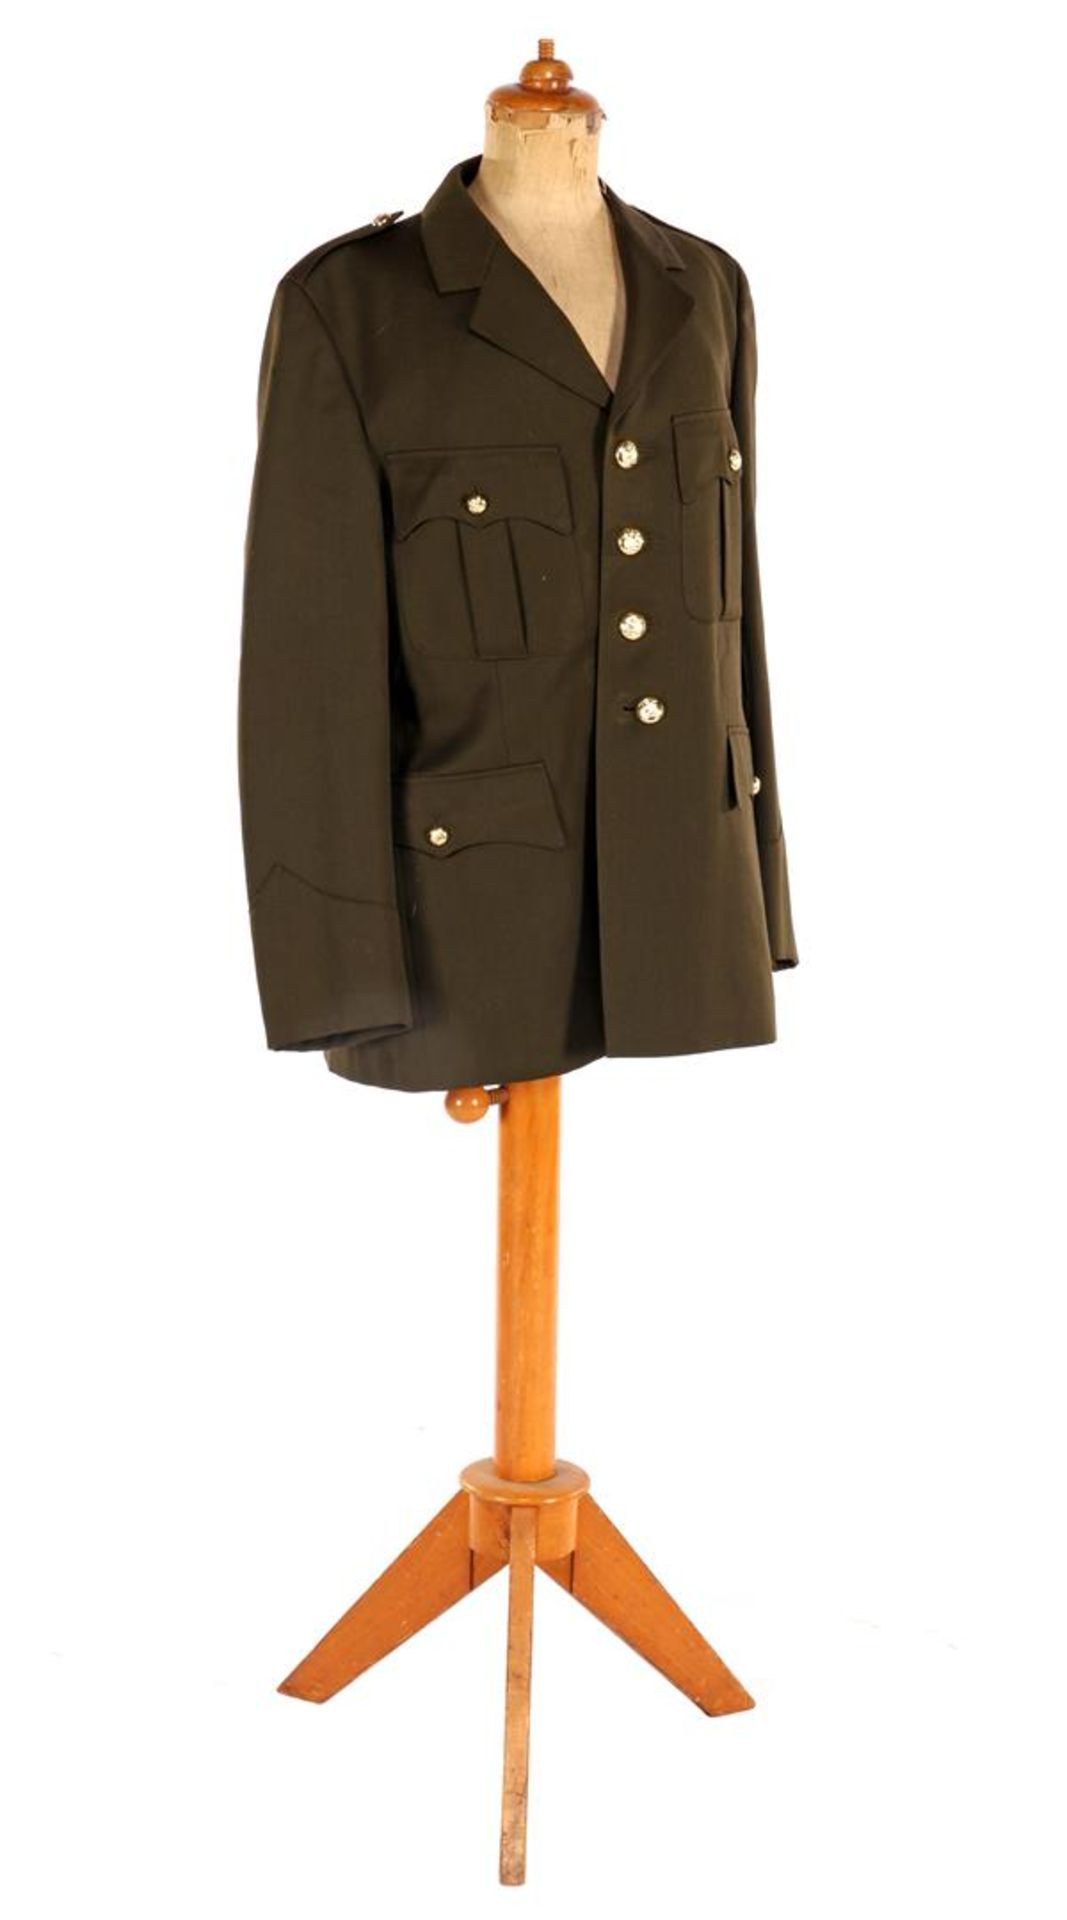 Uniform Dutch army